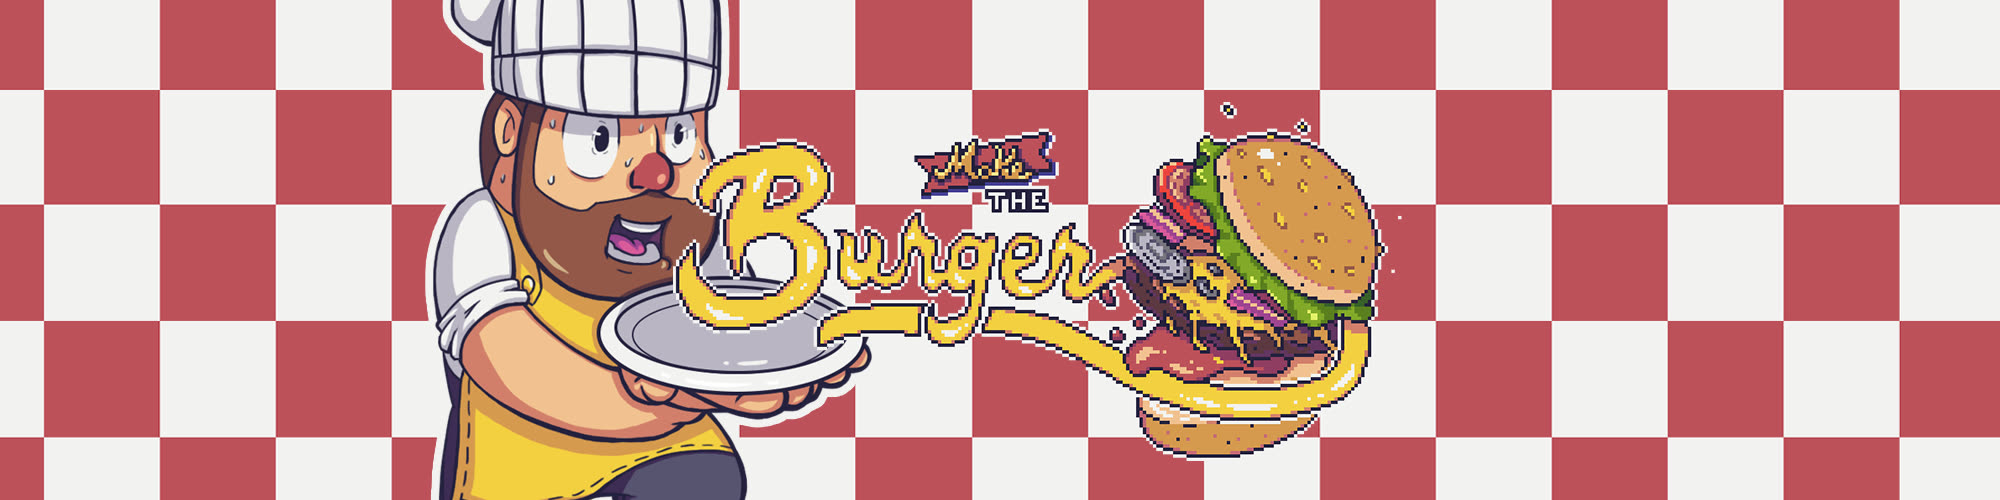 Make the Burger